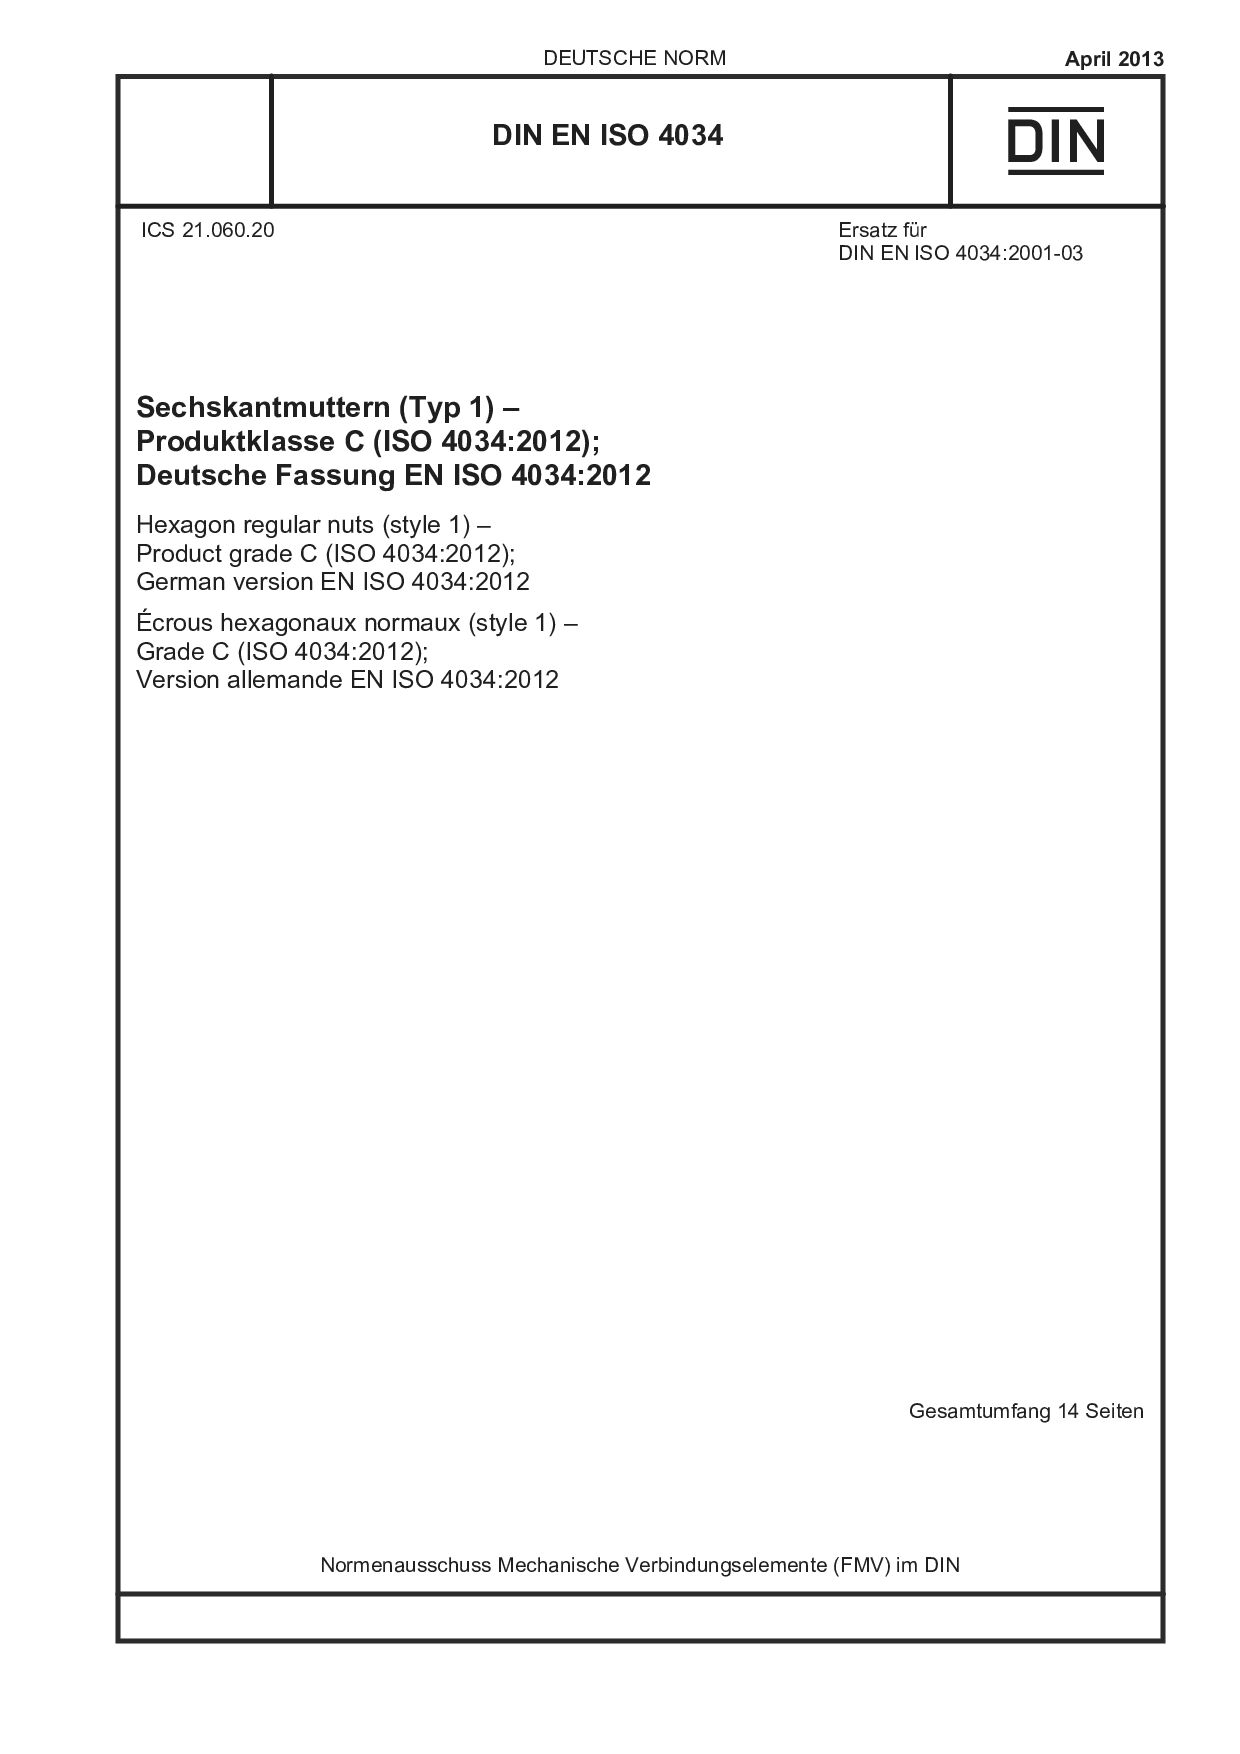 DIN EN ISO 4034:2013-04